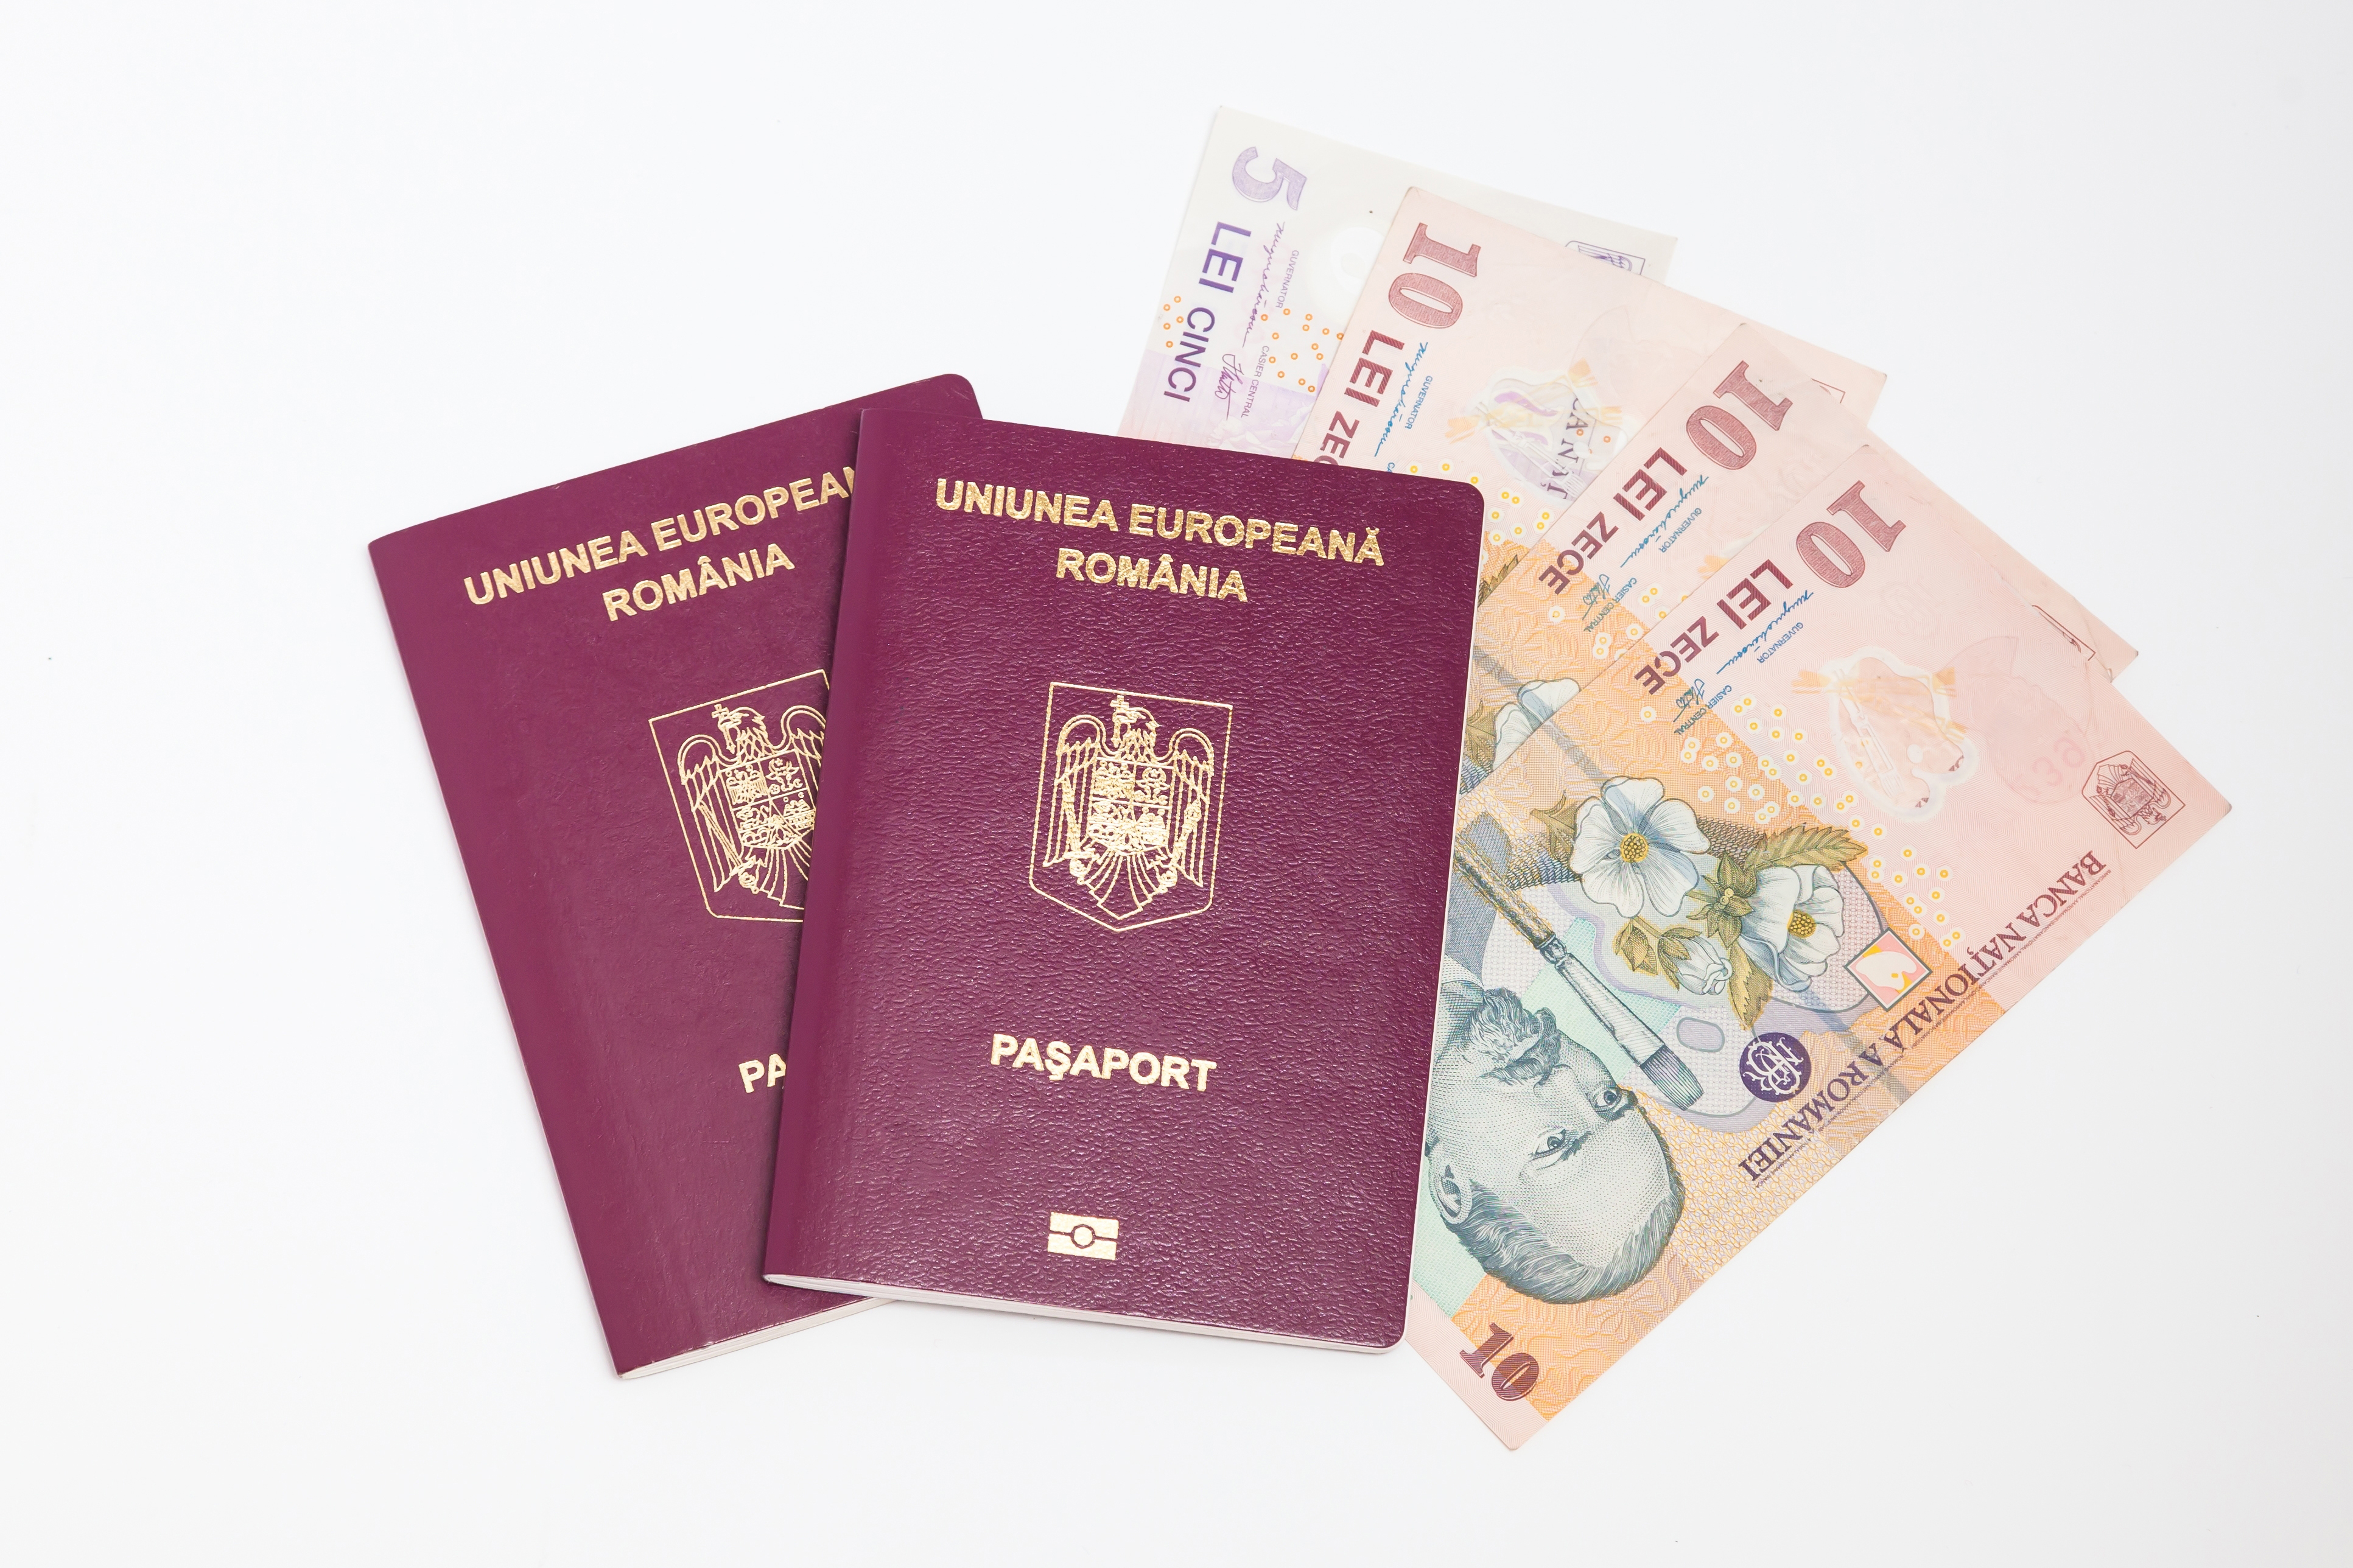 Гражданство и паспорт Румынии через инвестиции